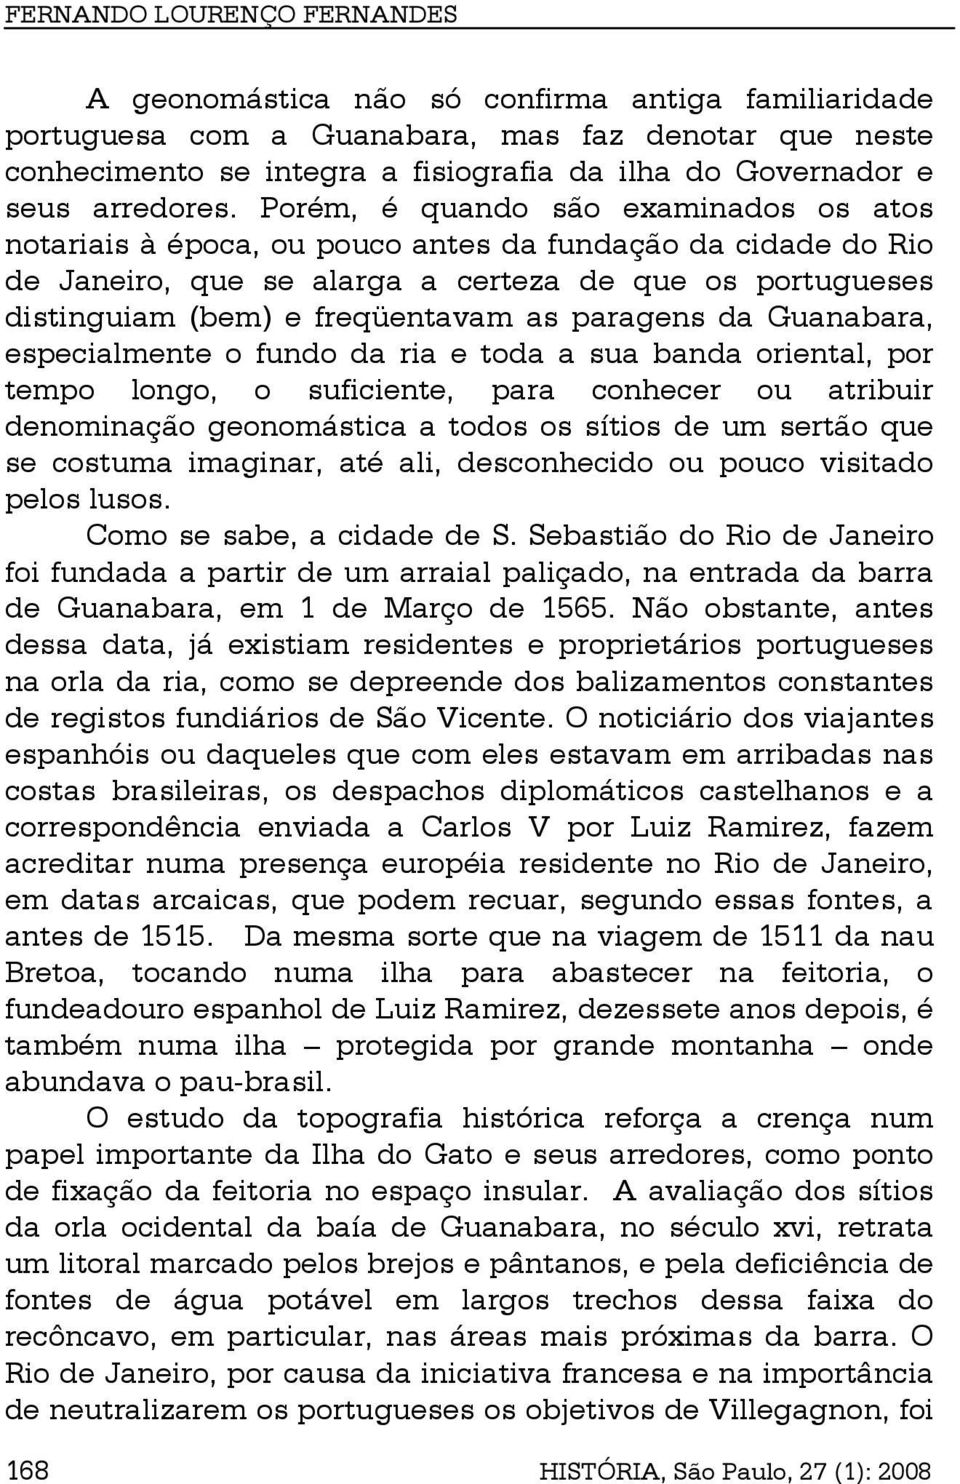 Porém, é quando são examinados os atos notariais à época, ou pouco antes da fundação da cidade do Rio de Janeiro, que se alarga a certeza de que os portugueses distinguiam (bem) e freqüentavam as